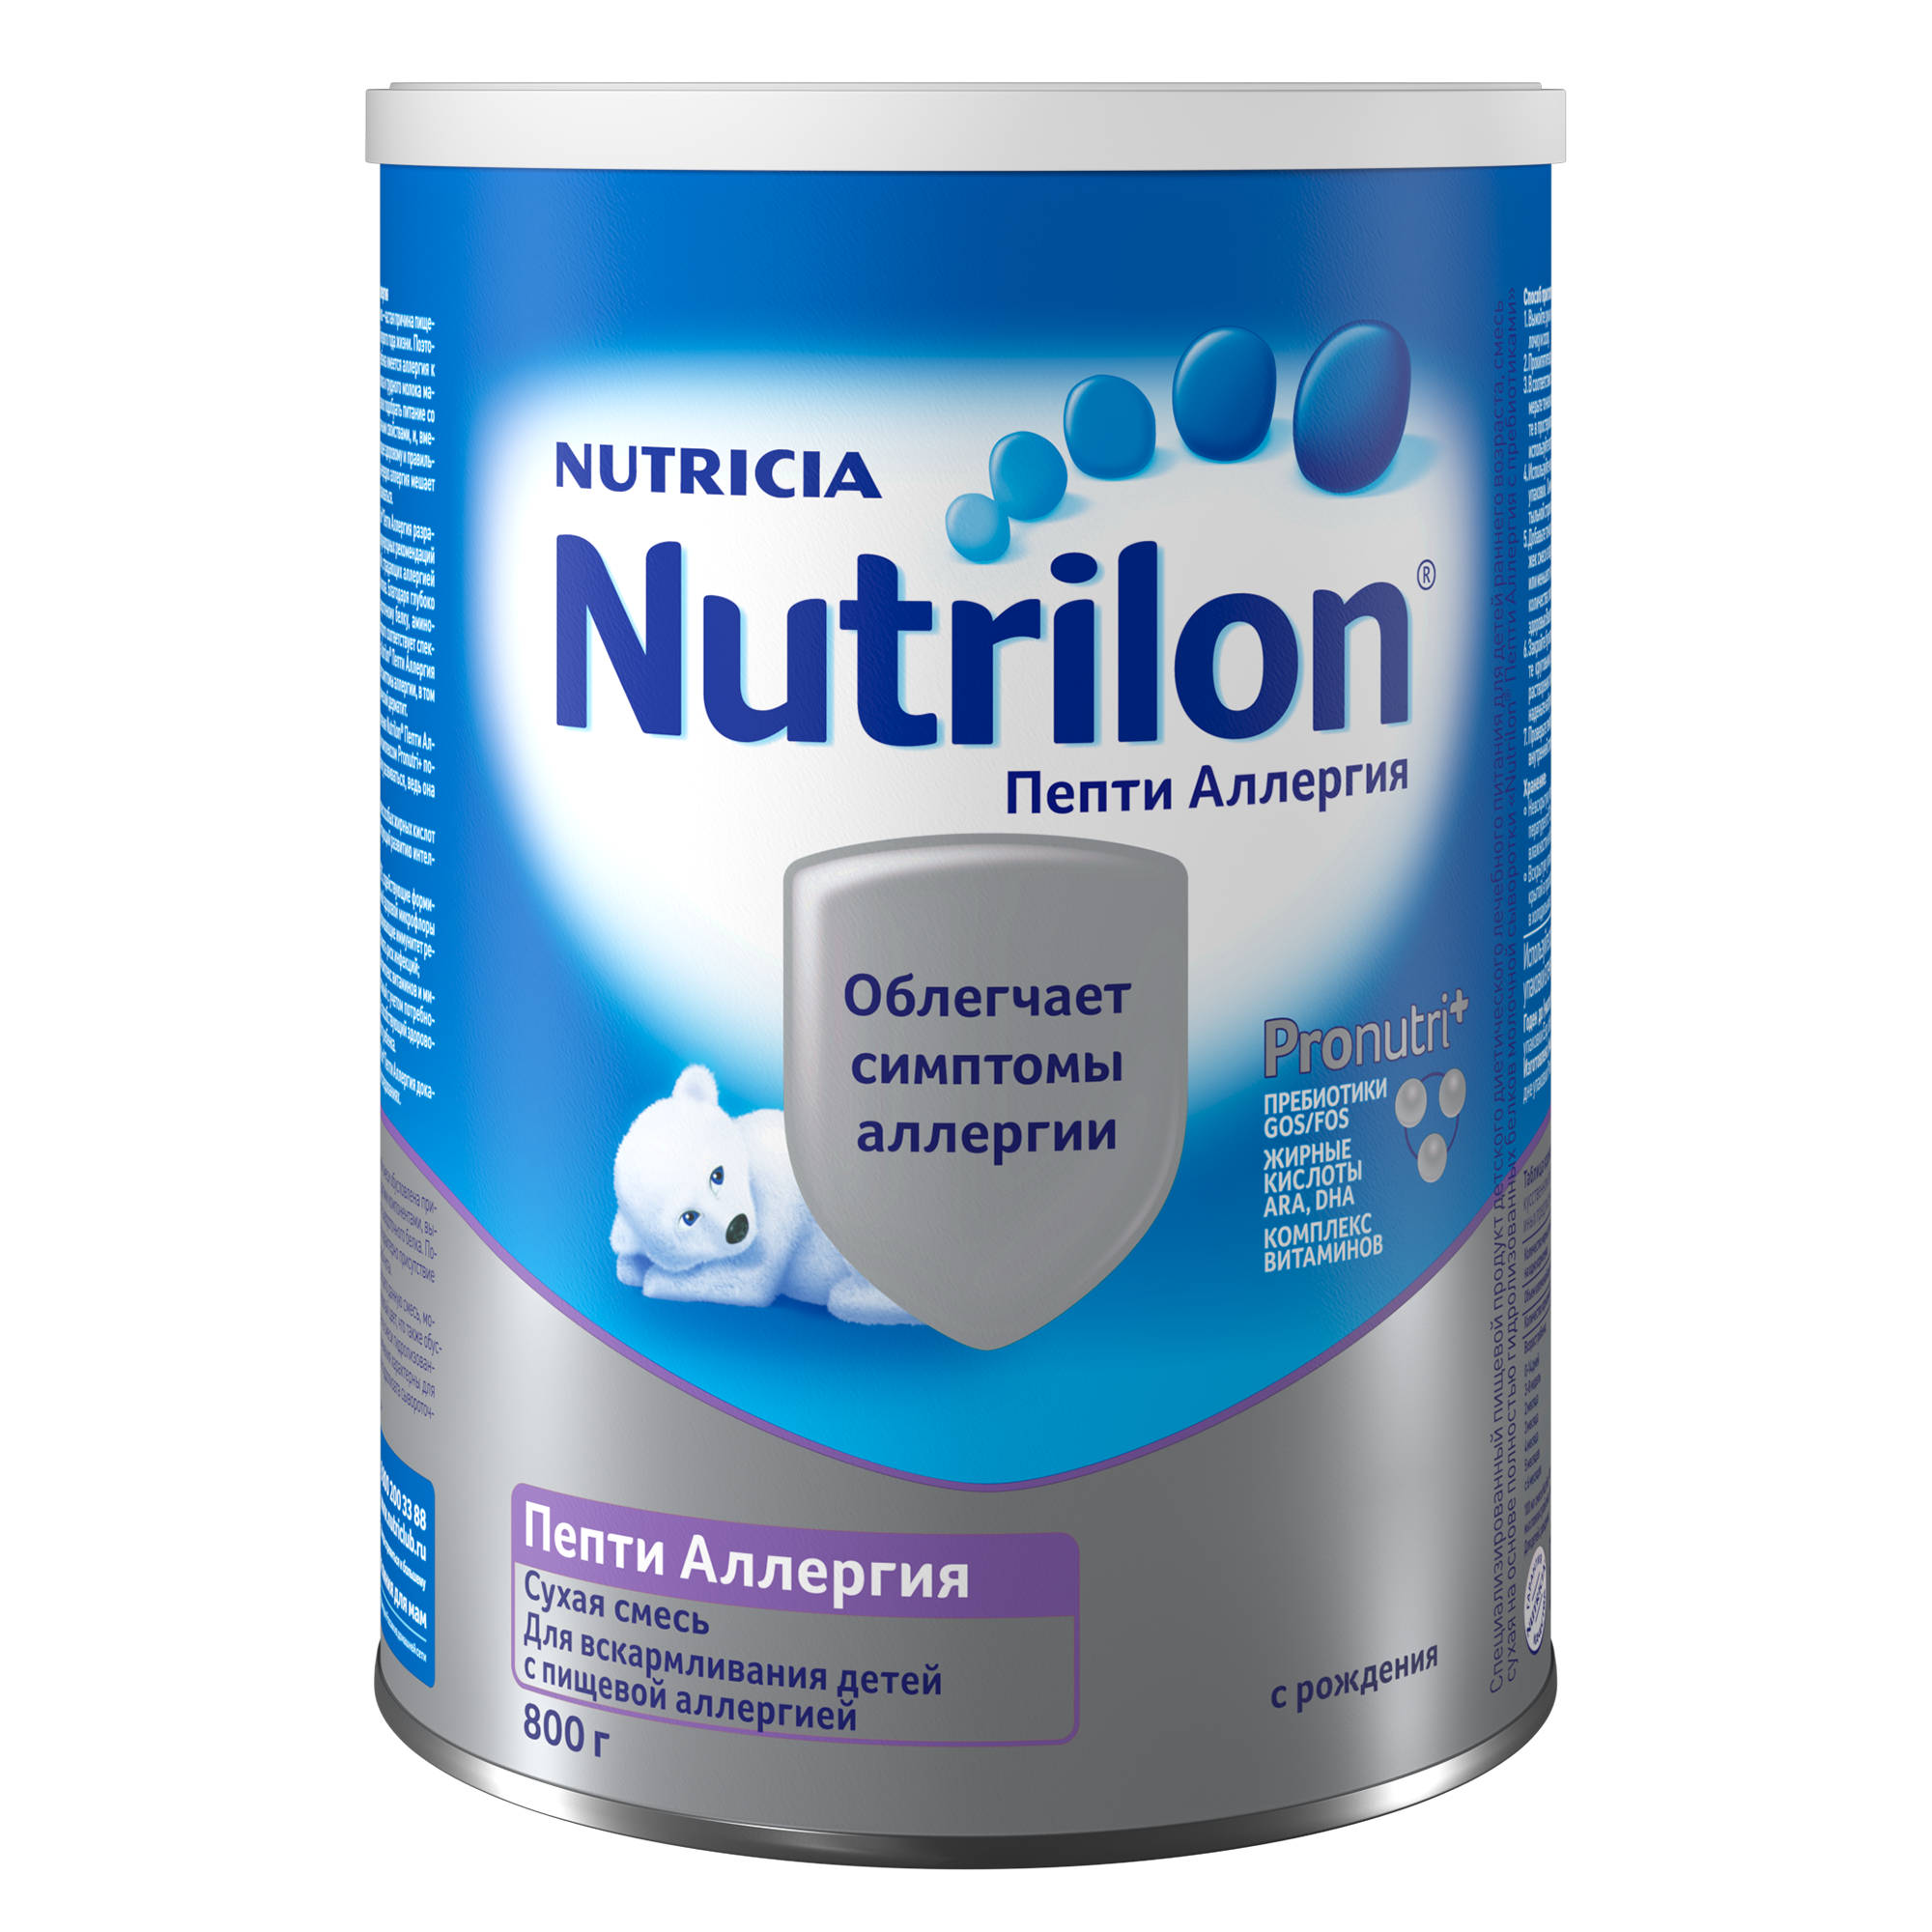 Молочная смесь Nutrilon Пепти Аллергия с рождения, 800 г, 1 шт - фото №2